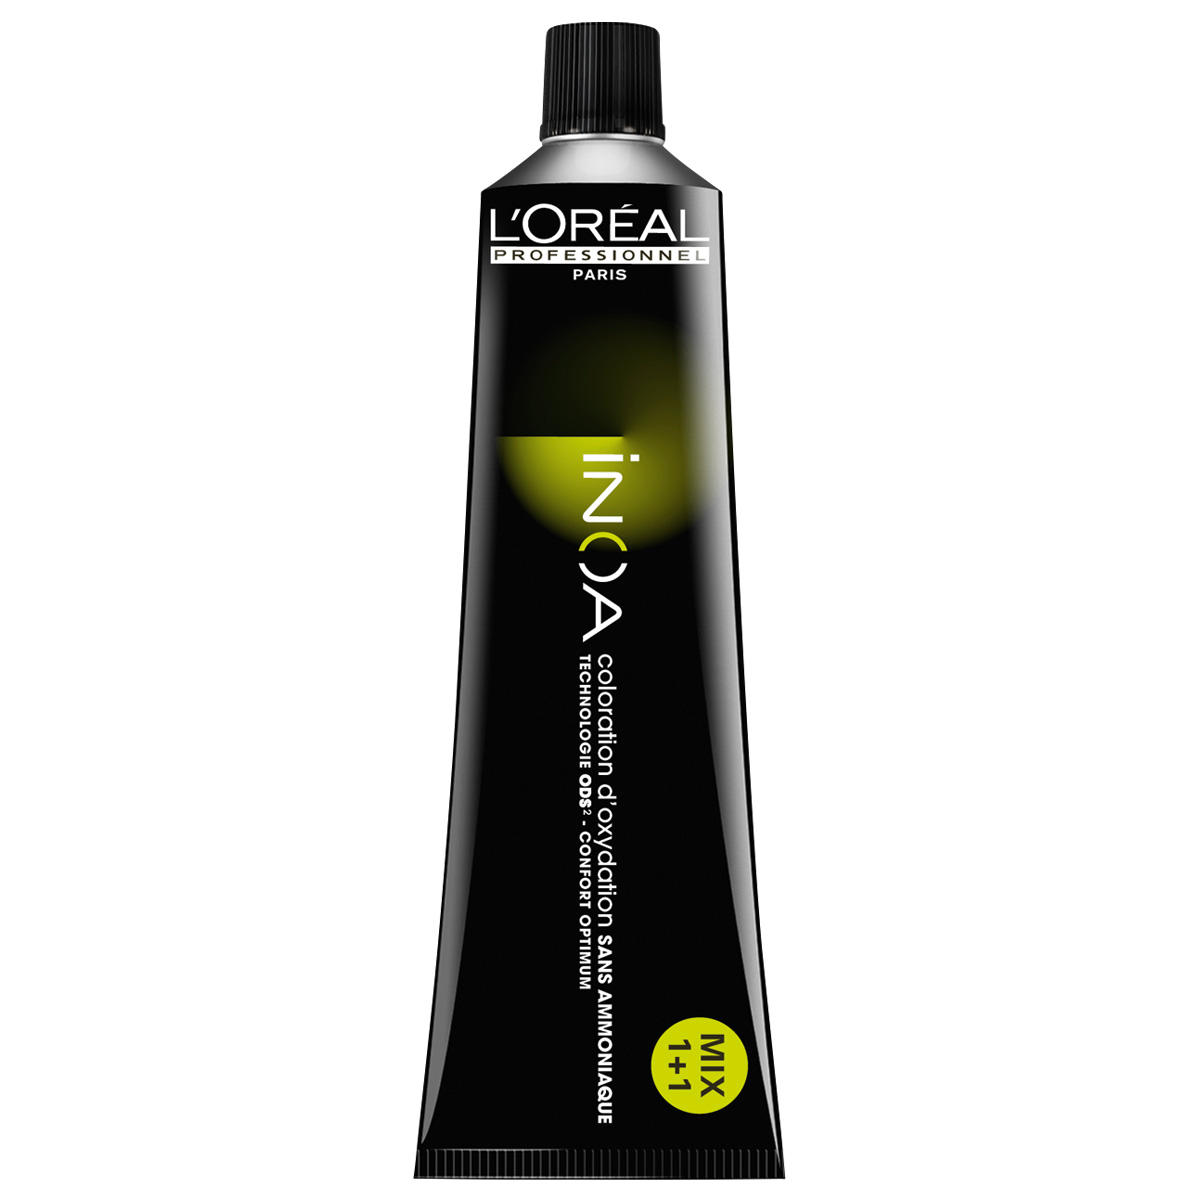 L'Oréal Professionnel Paris Coloration 6.0 Rubio oscuro intensivo, tubo 60 ml